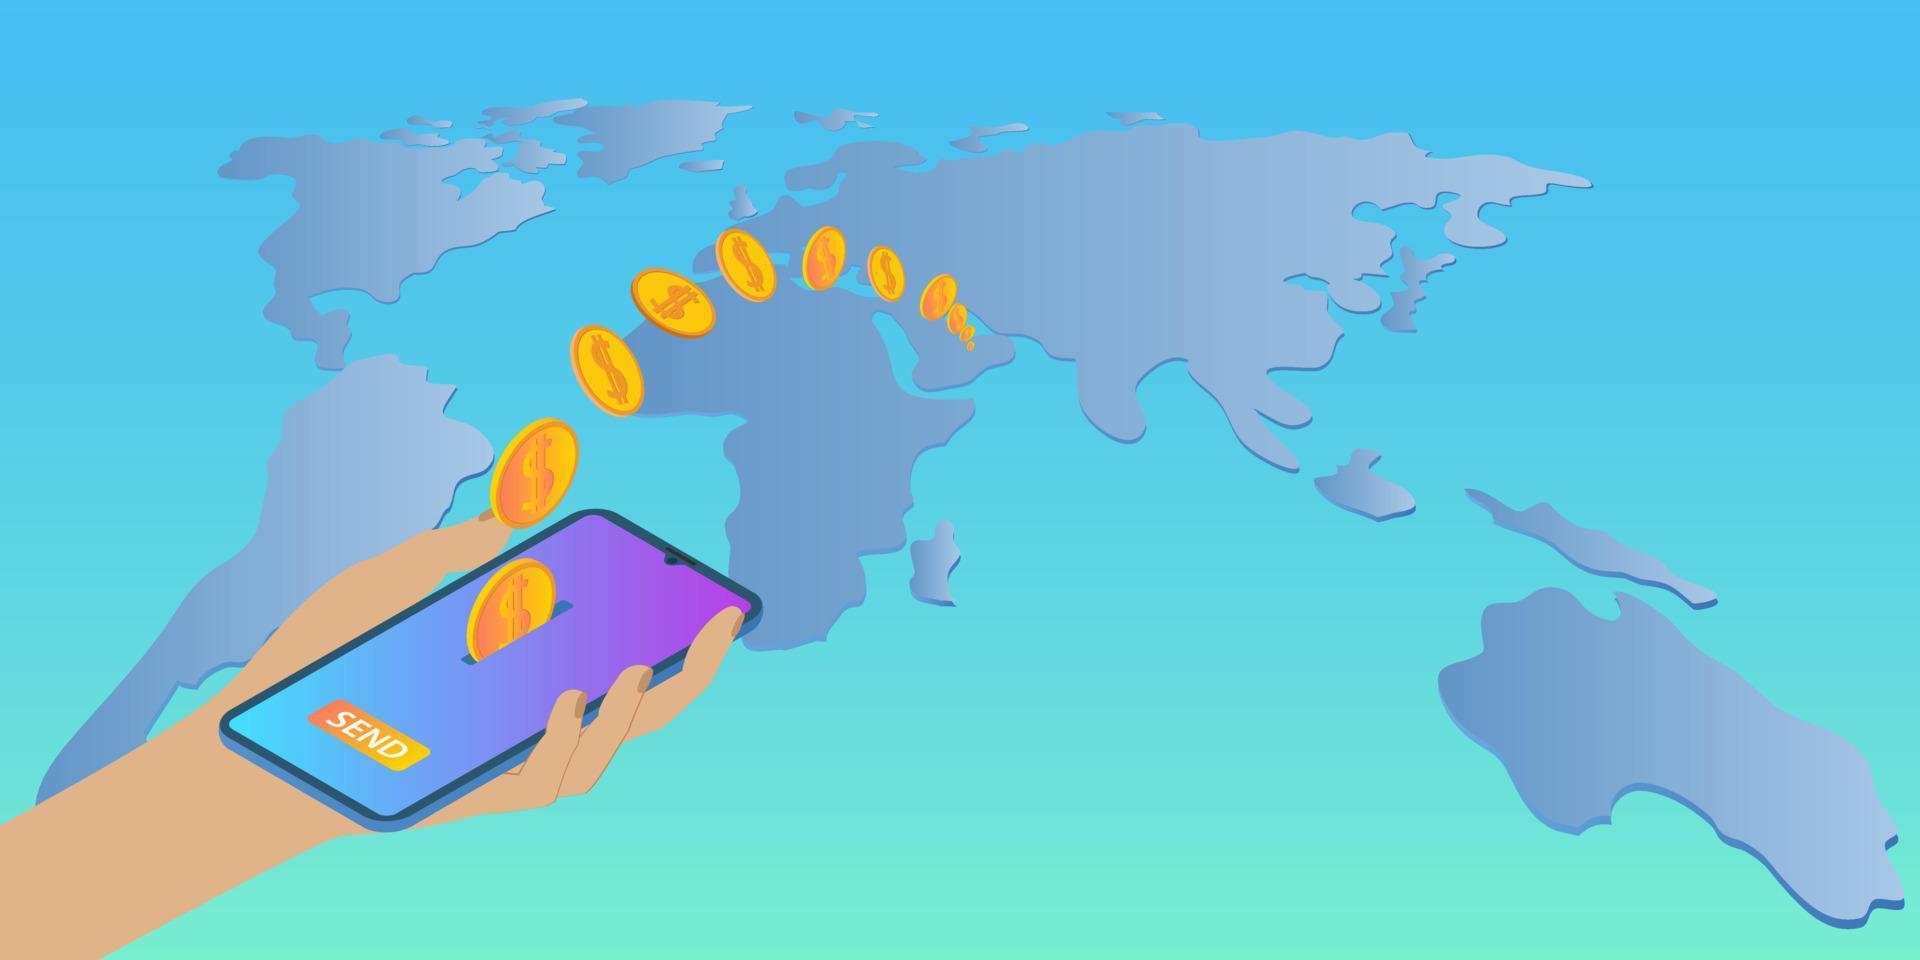 Online-Geldüberweisungen. Eine Person verwendet ein Smartphone, um Geld um die Welt zu senden. hand und smartphone auf dem hintergrund einer großen karte der world.vector illustration. vektor